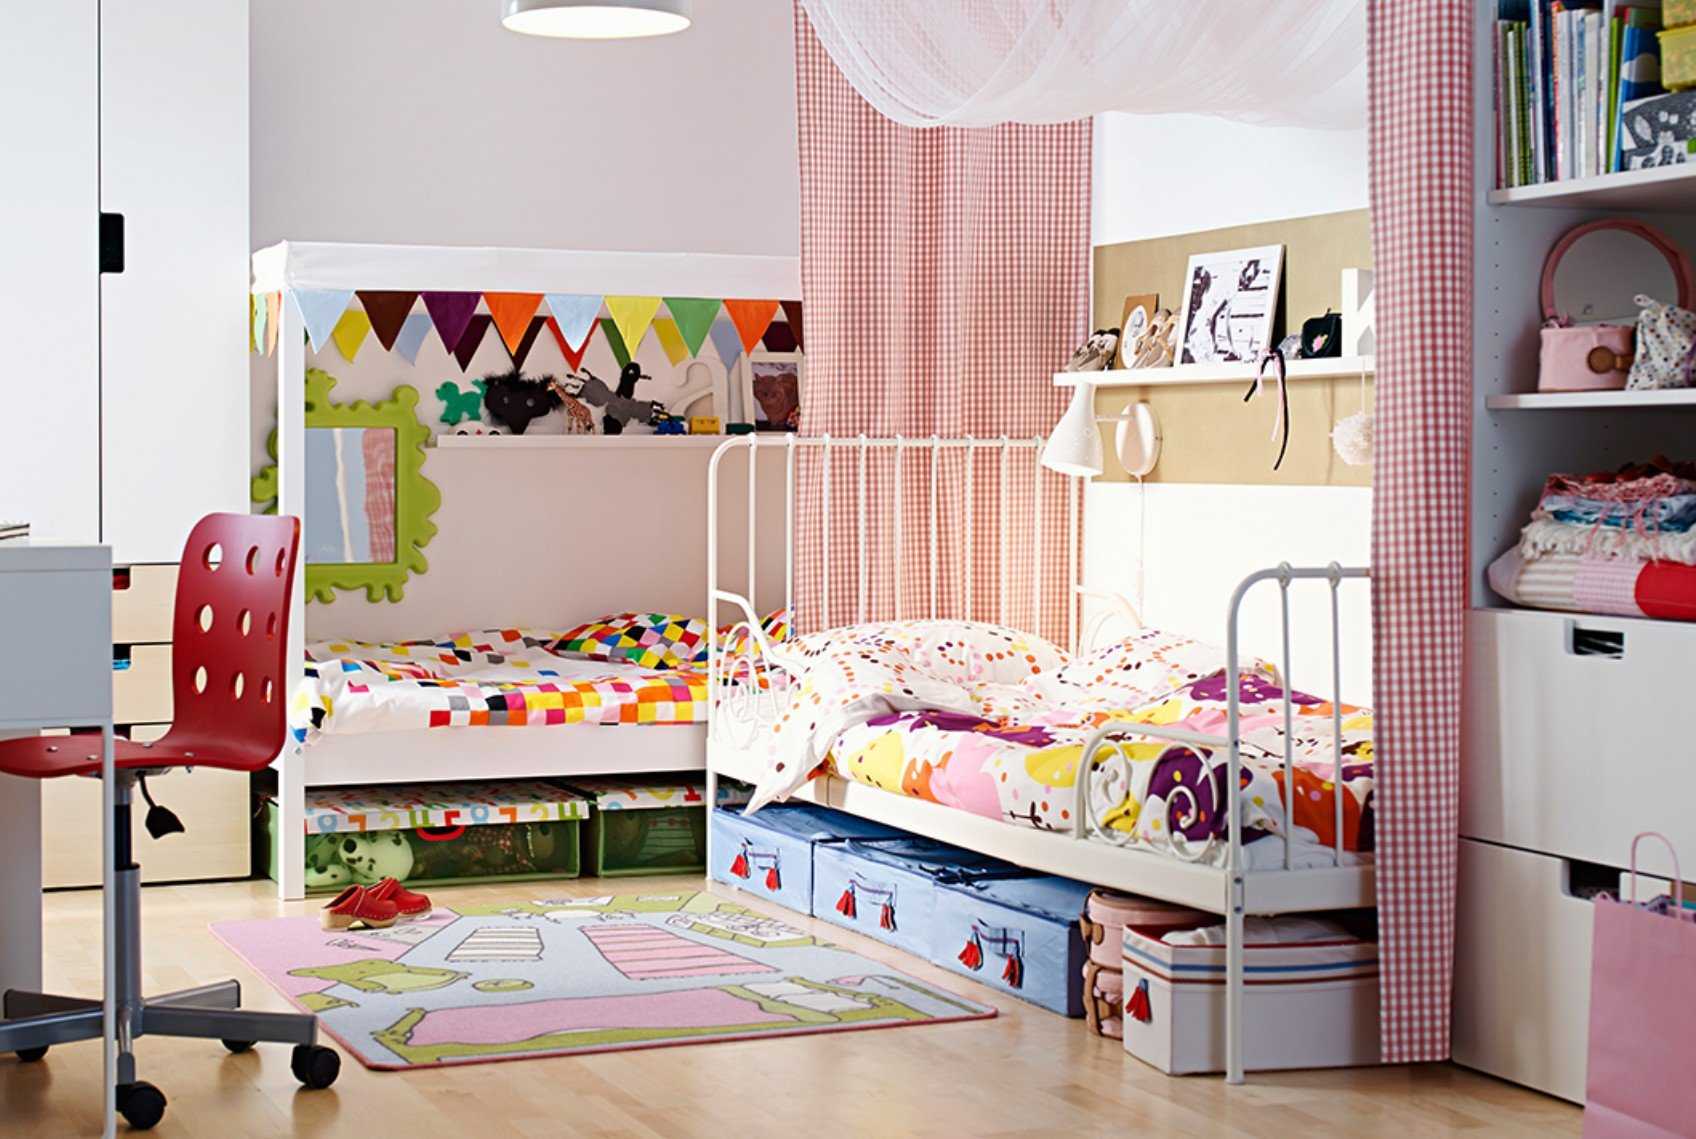 Фото вариантов интерьера детской с мебелью Стува от ИКЕА помогут родителям обустроить комнату ребёнка Кровати, шкафы и комоды функциональны и имеют большое разнообразие цветов